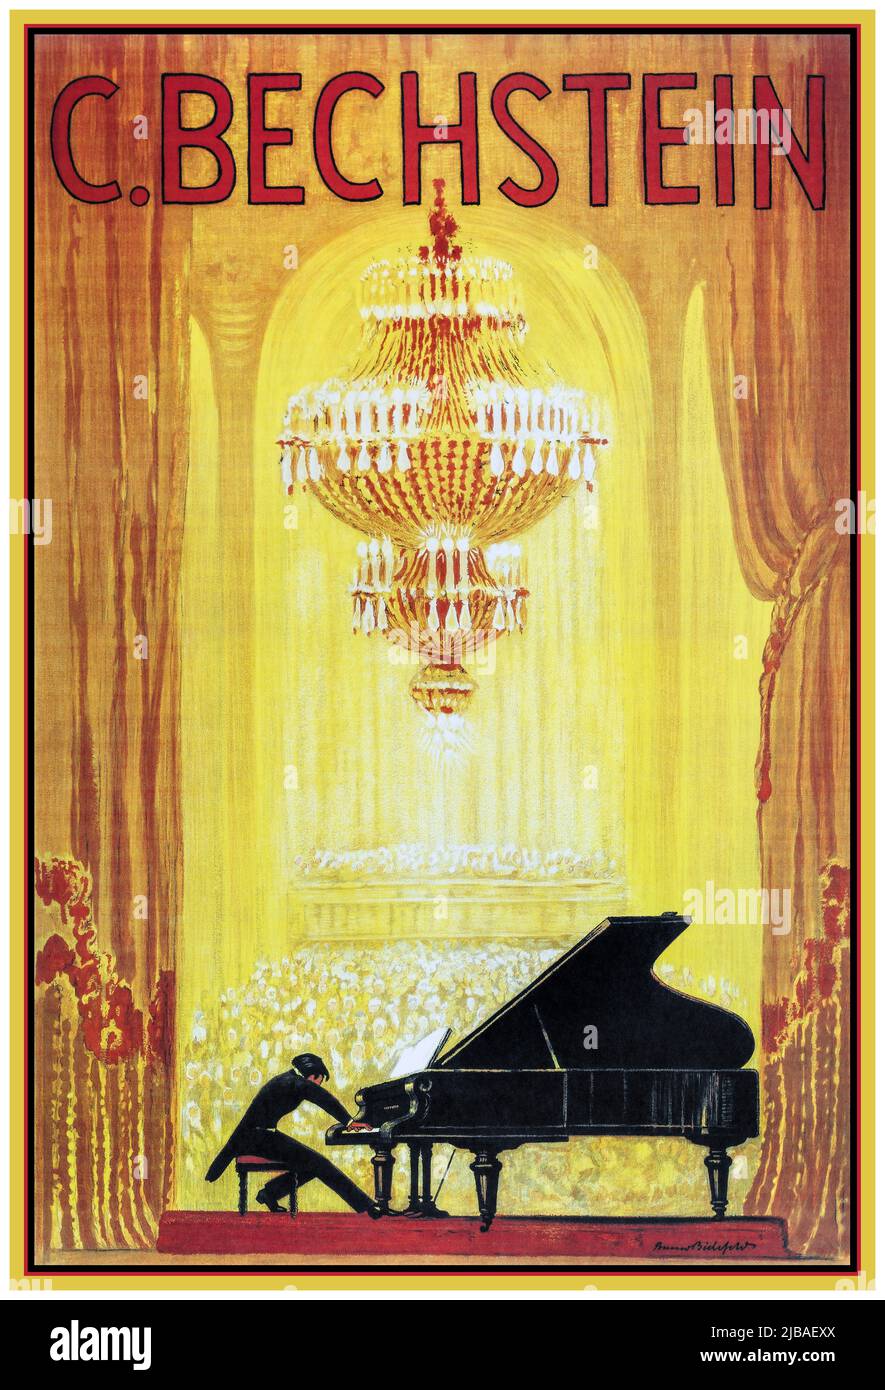 GRAND PIANO BECHSTEIN 1900s affiche publicitaire pour le fabricant allemand de piano C. Bechstein publié vers 1920. C. Bechstein Factory, Berlin, Allemagne 1920s affiche de lithographie sur la publicité d'instruments de musique Banque D'Images